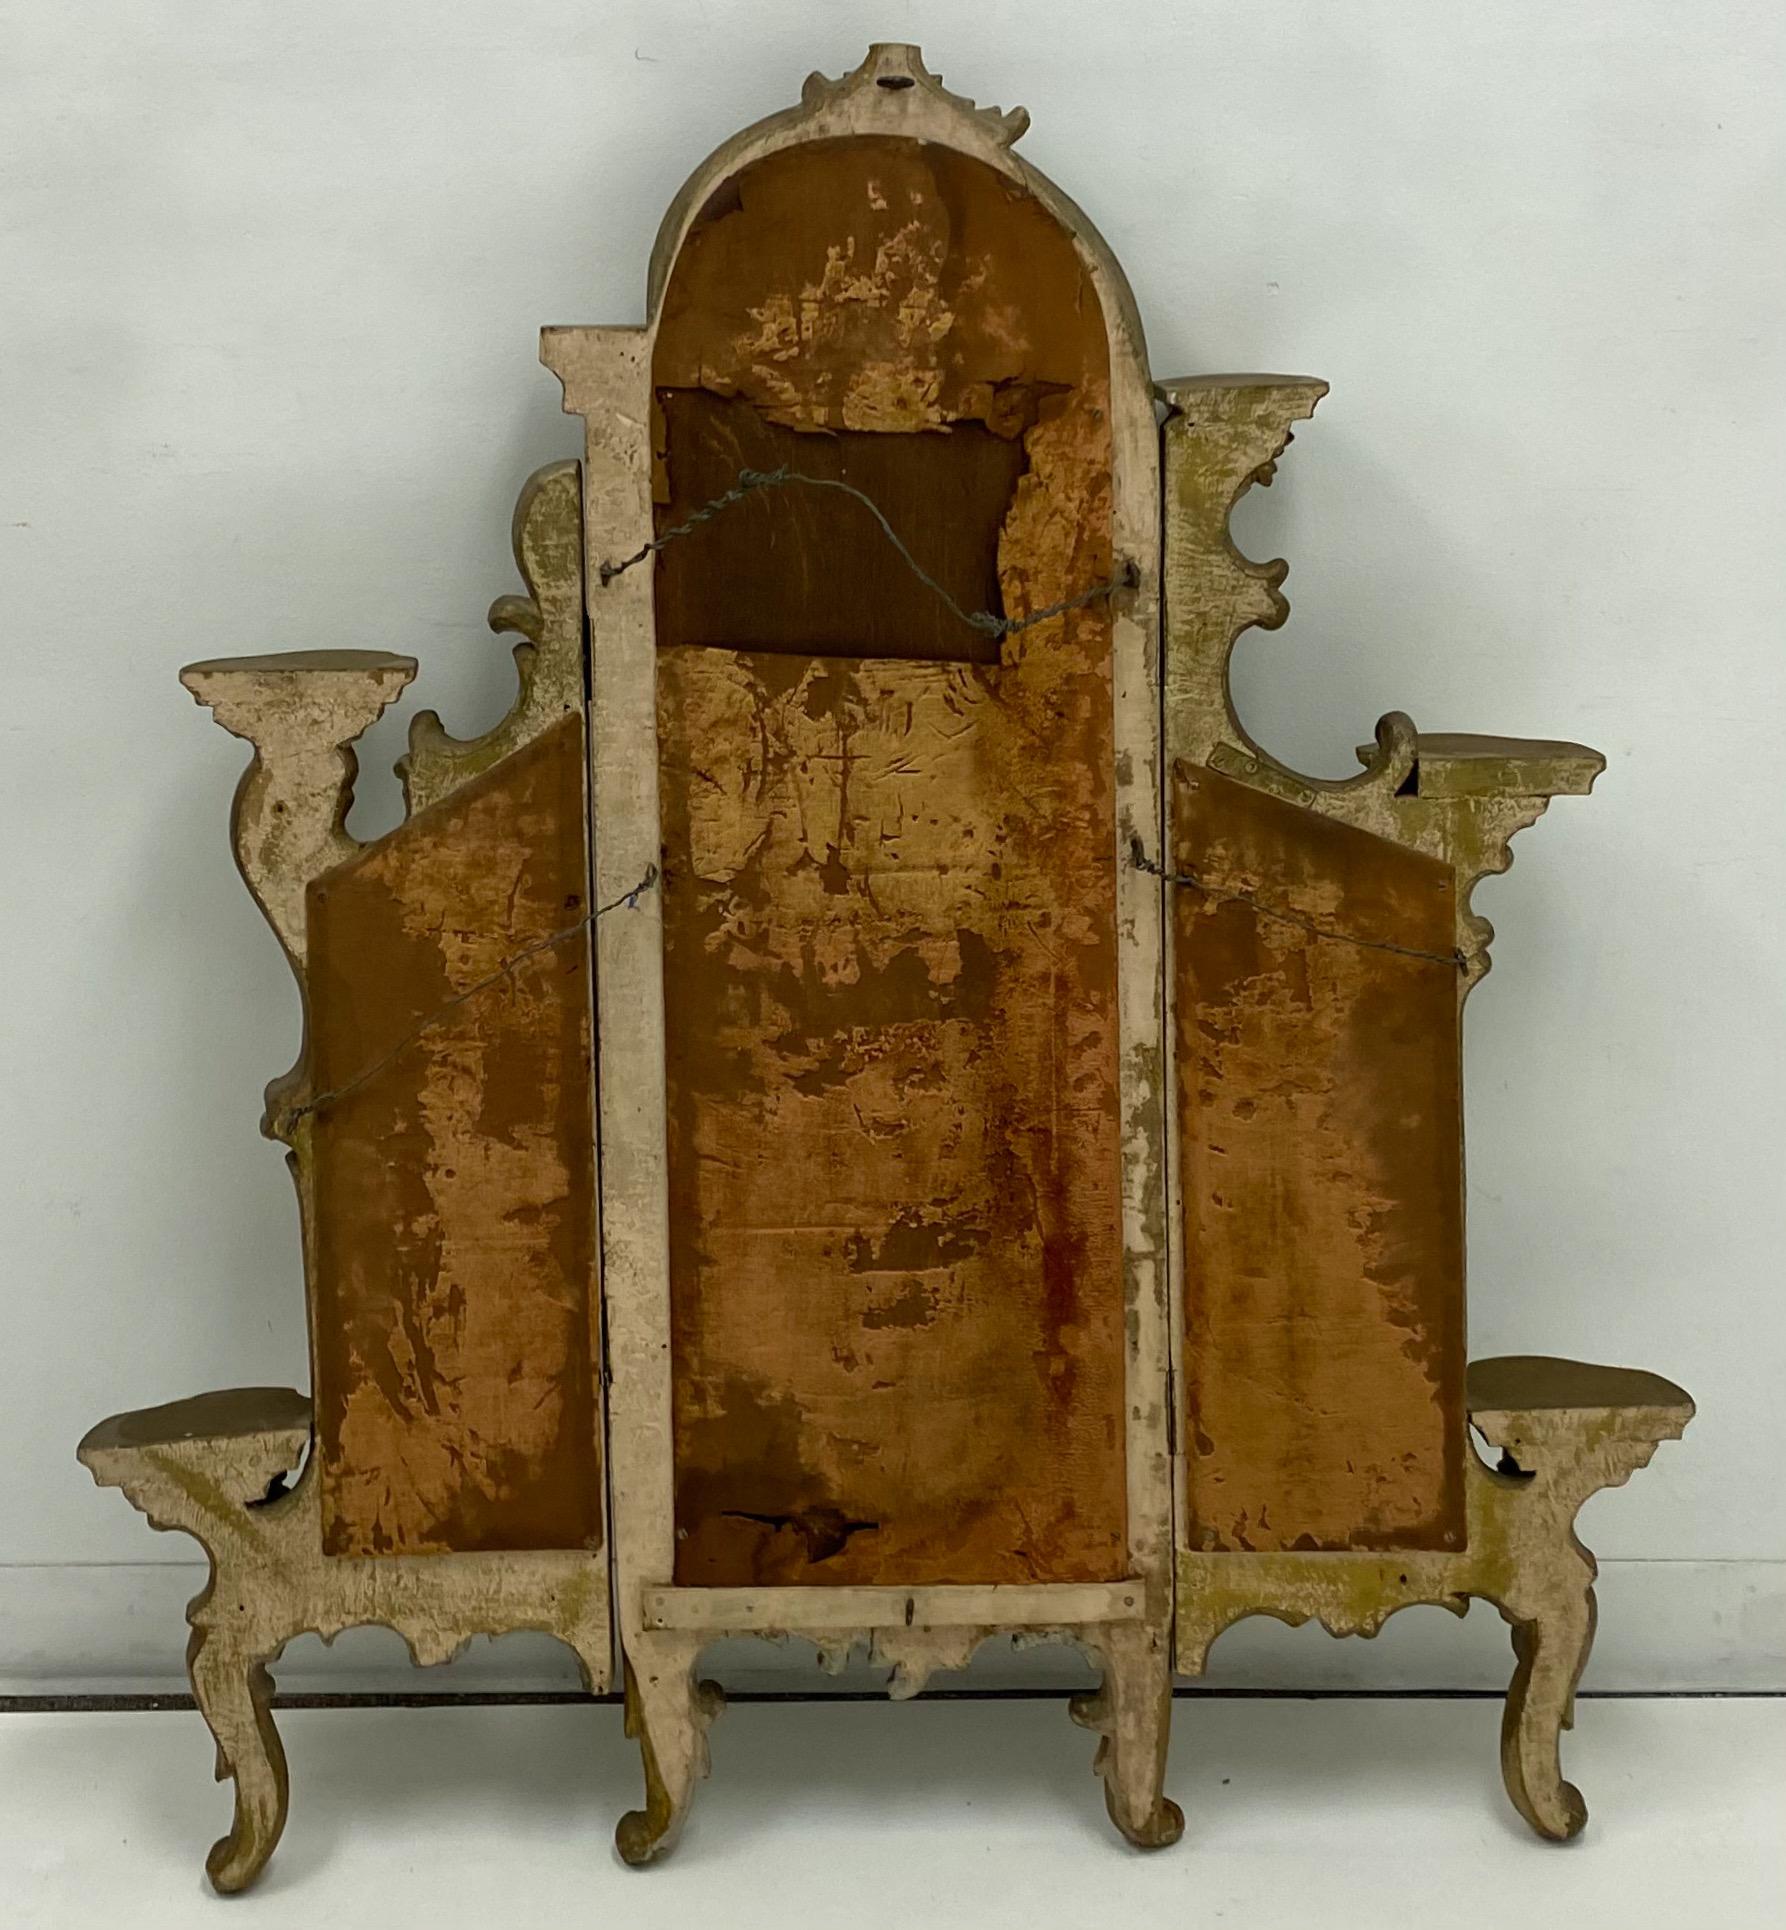 J'adore ça ! Il s'agit d'un miroir triptyque en bois doré sculpté du 19ème siècle. Bien qu'il ait été adapté pour être fixé au mur, il a probablement été posé sur une commode à un moment donné. Le miroir comporte huit petites étagères encadrant la